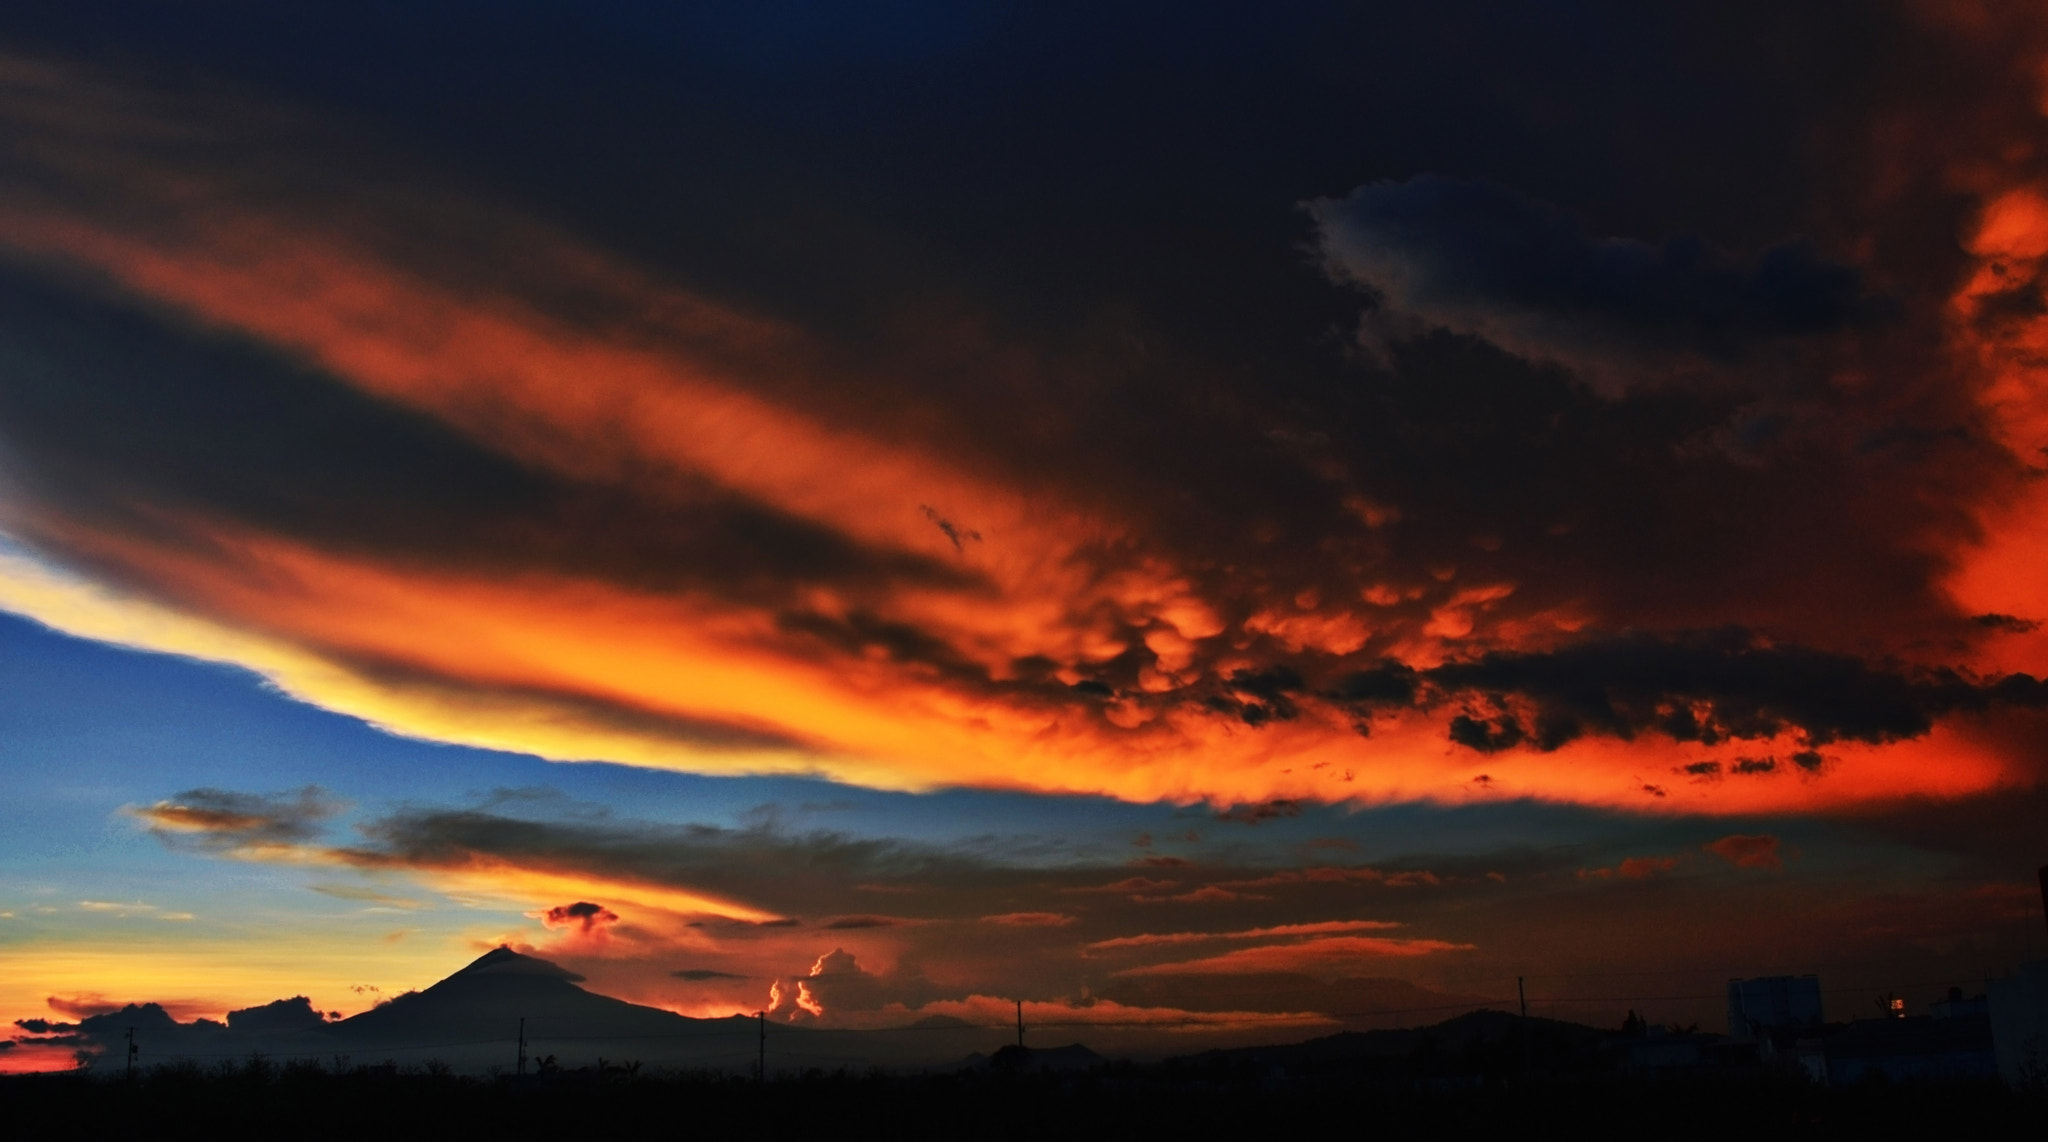 Nikon D3200 + AF Zoom-Nikkor 28-70mm f/3.5-4.5D sample photo. Sunset popocatepetl and clouds photography